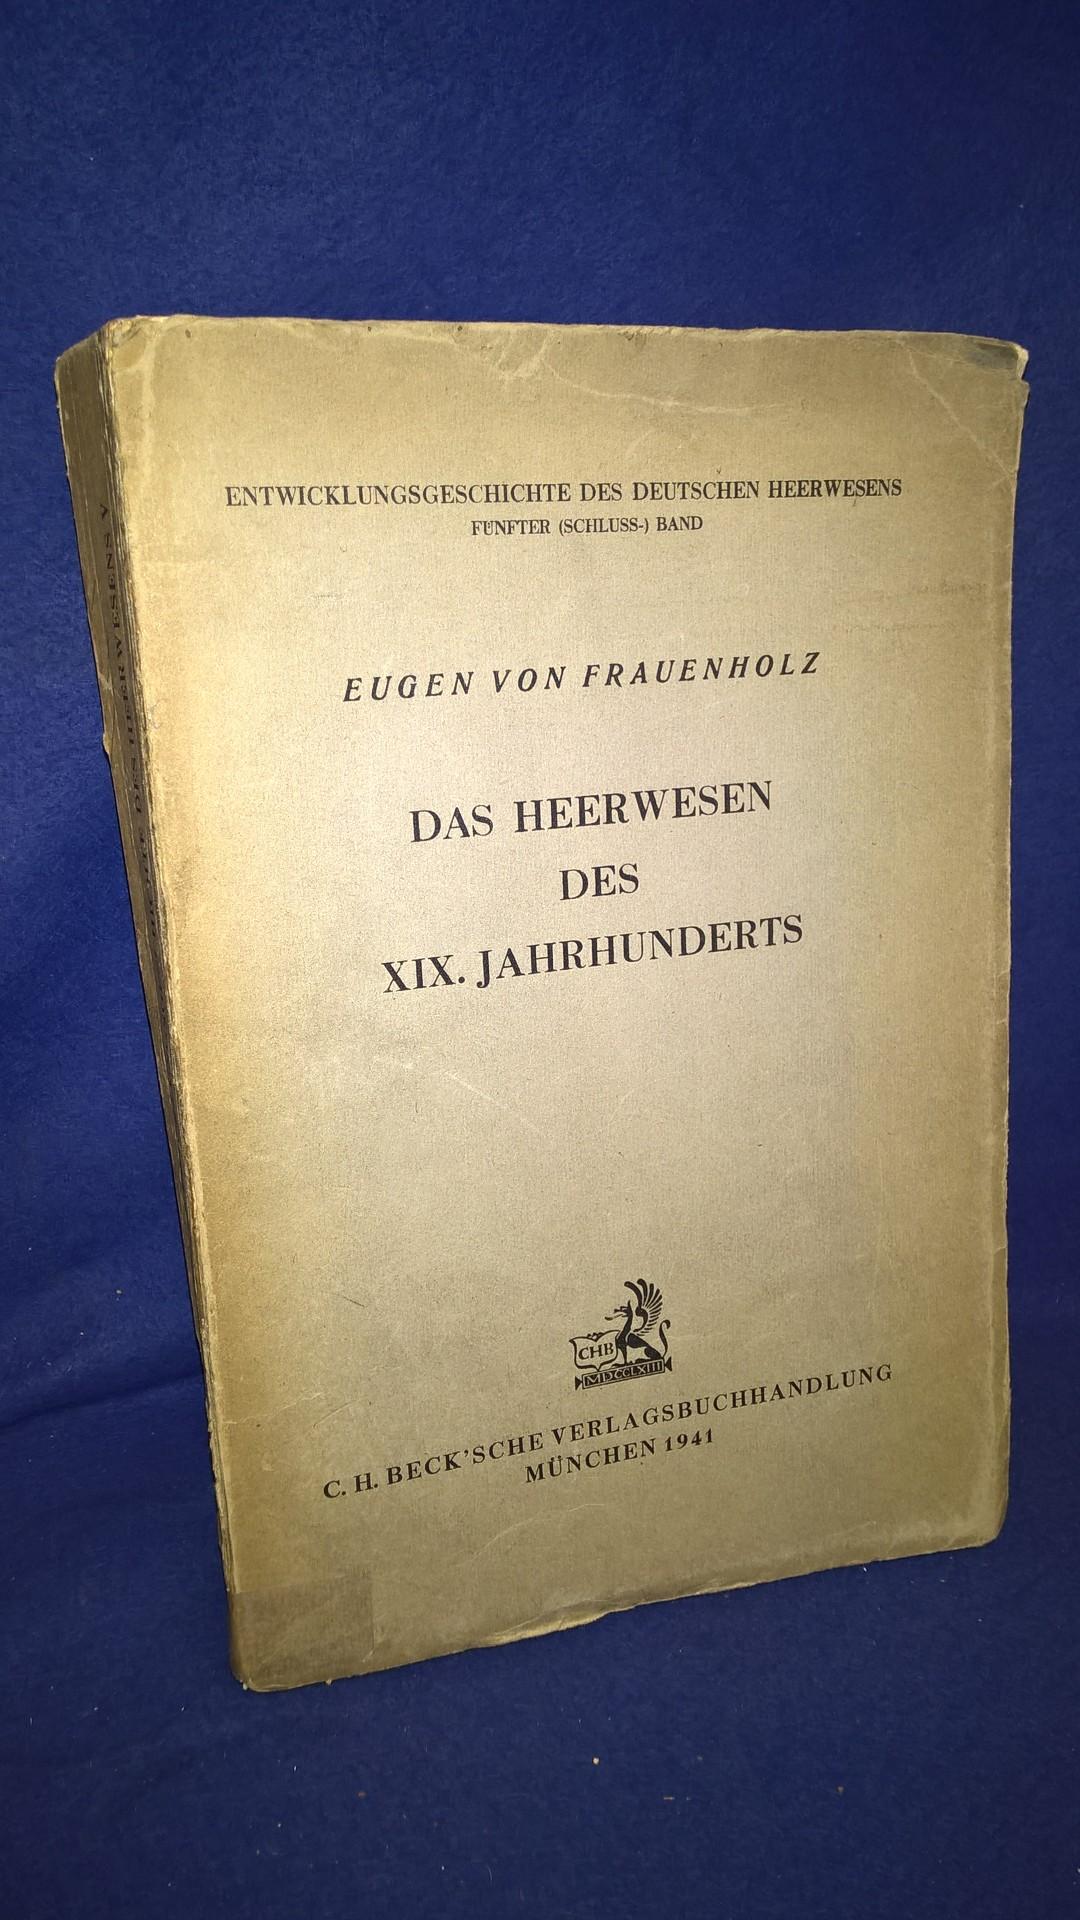 Entwickungsgeschichte des Deutschen Heerwesens, Band 5 (Schlußband). - Das Heerwesen des XIX. Jahrhunderts